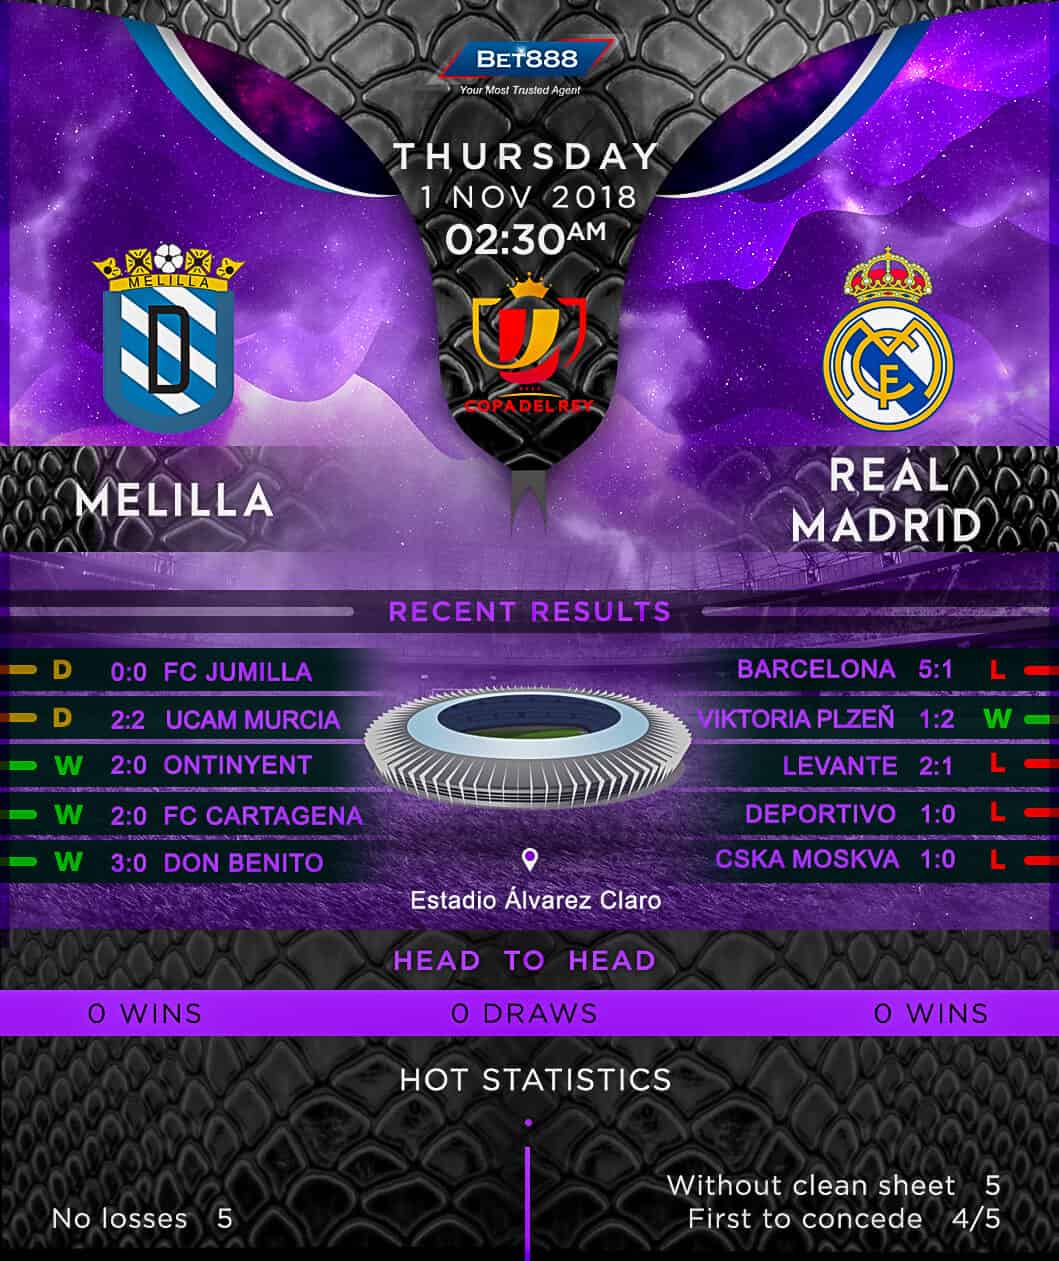 UD Melilla vs Real Madrid 01/11/18